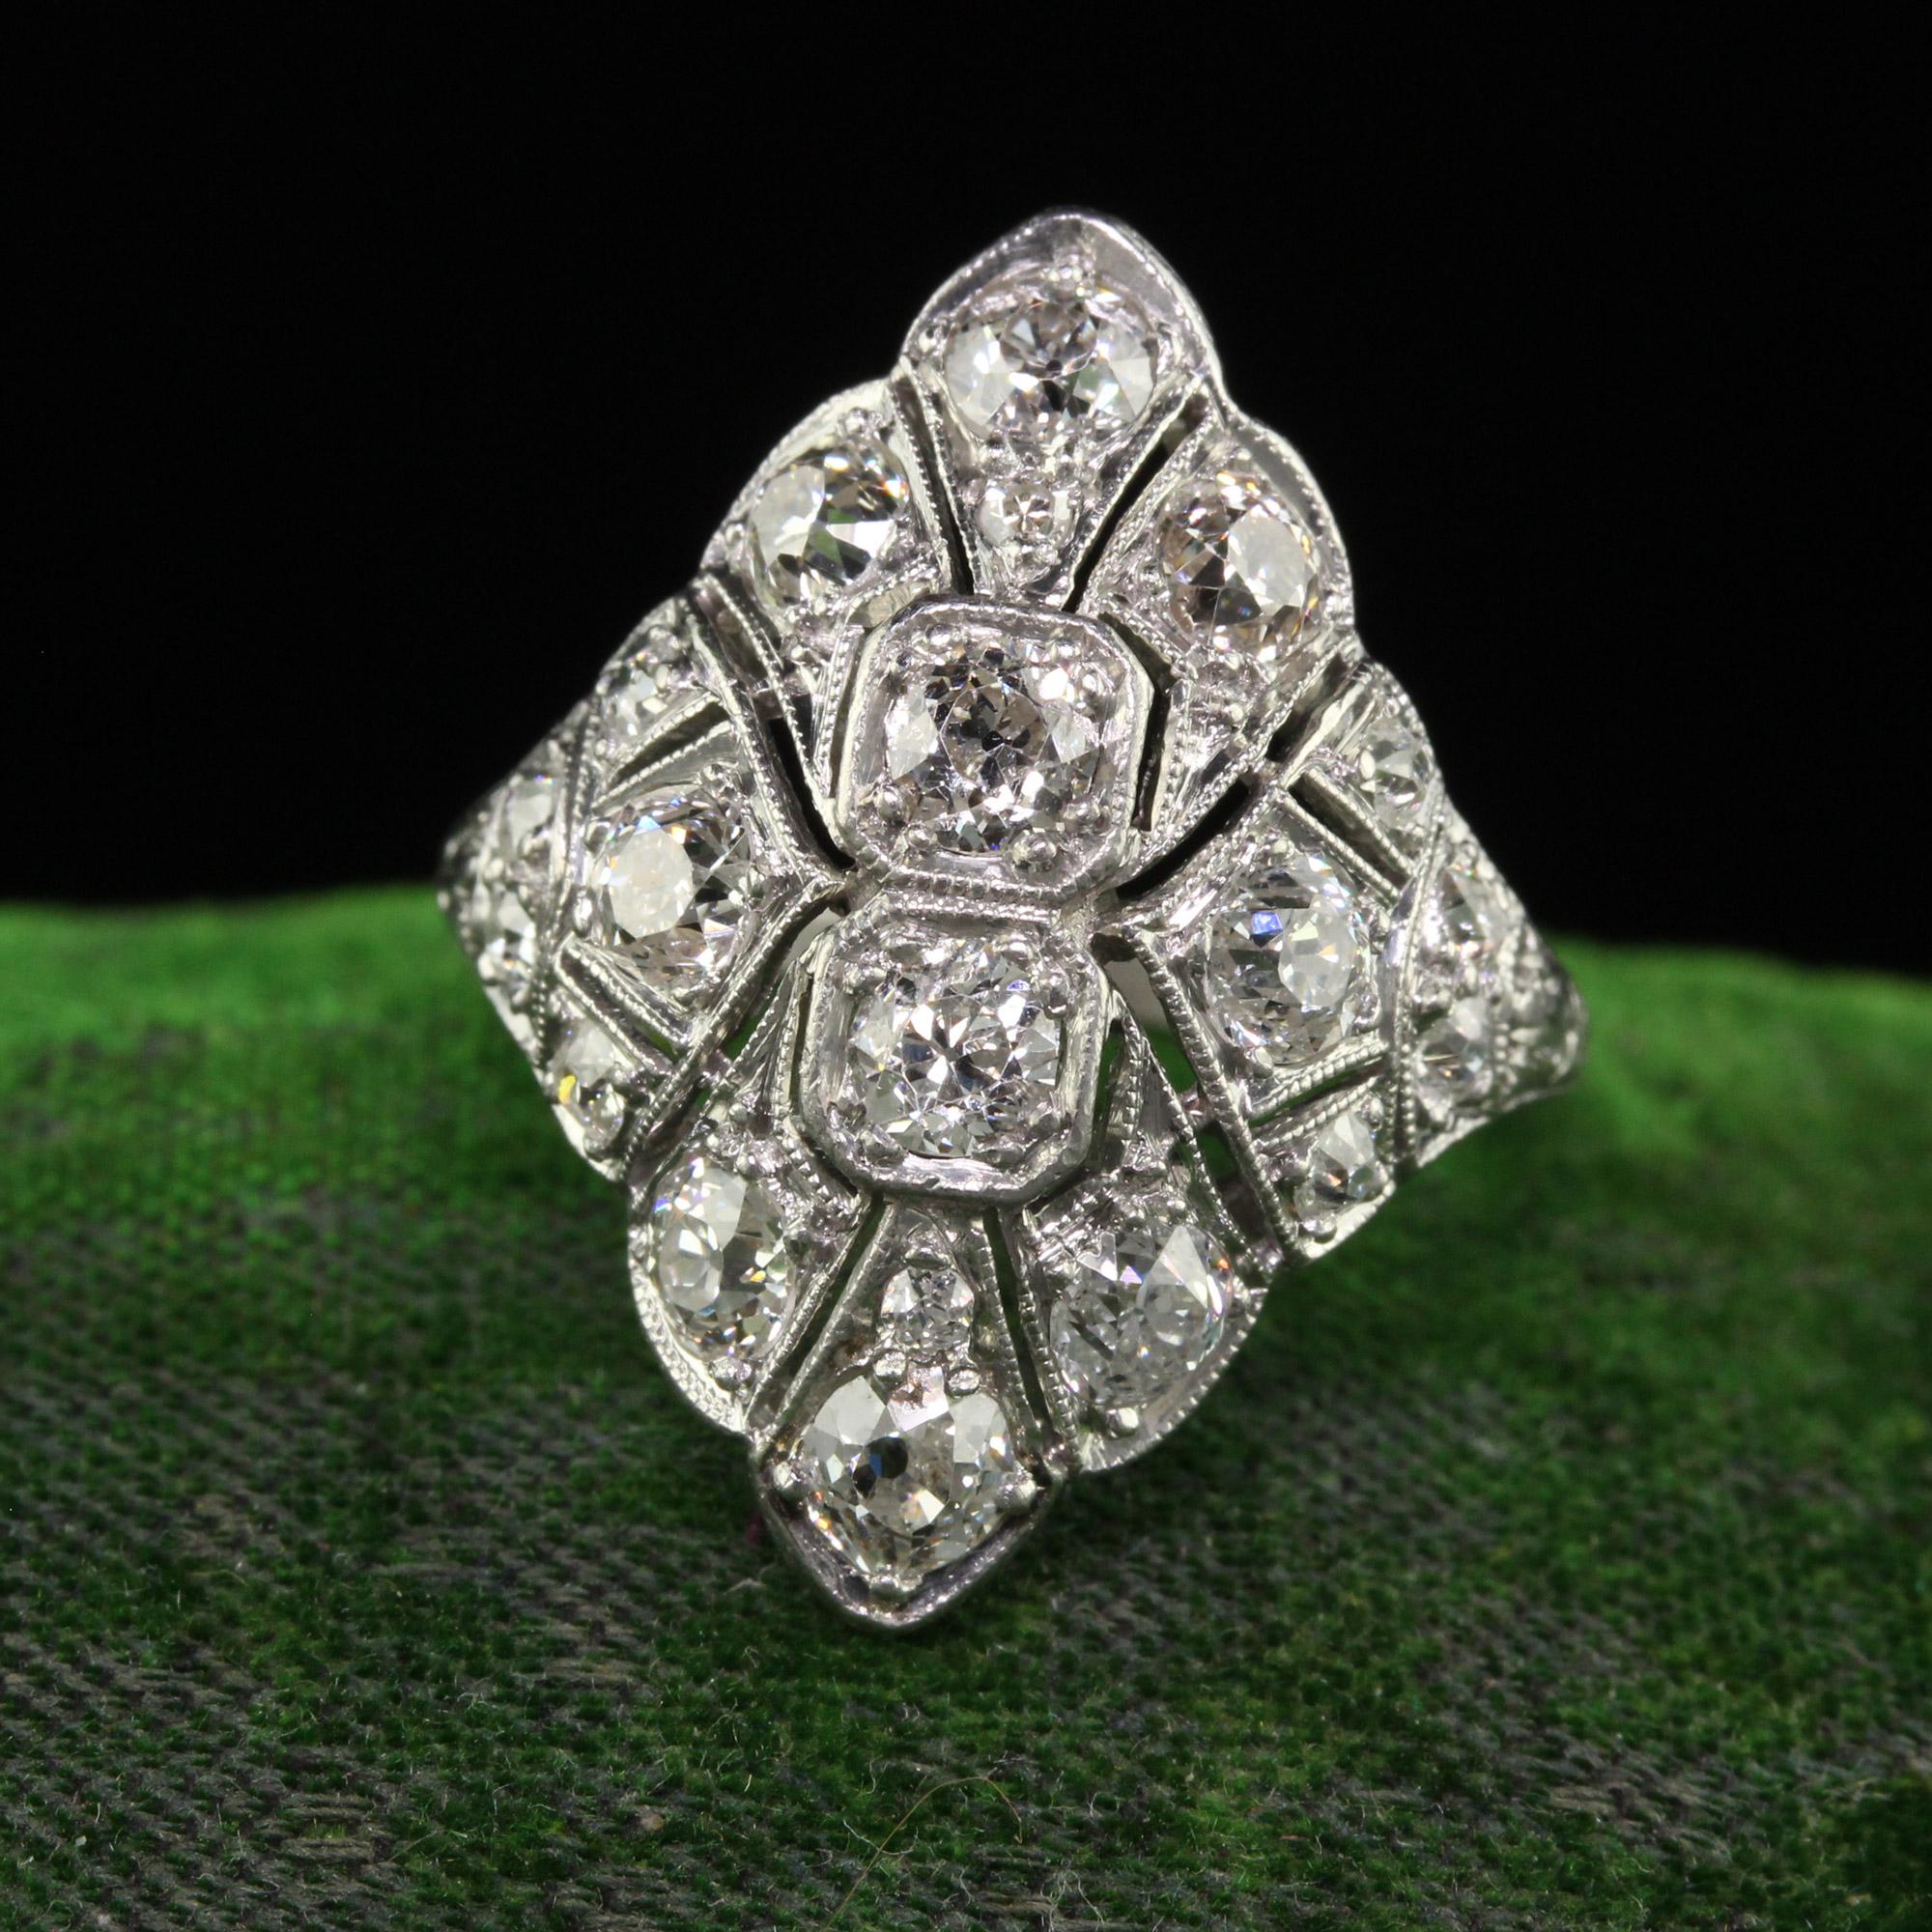 Schöne antike Art Deco Platinum Old European Diamond Filigree Shield Ring. Dieser unglaubliche Art-Deco-Diamant-Schildring ist aus Platin gefertigt. Der obere Teil des Rings ist mit wunderschönen Diamanten im alten europäischen Schliff in einer